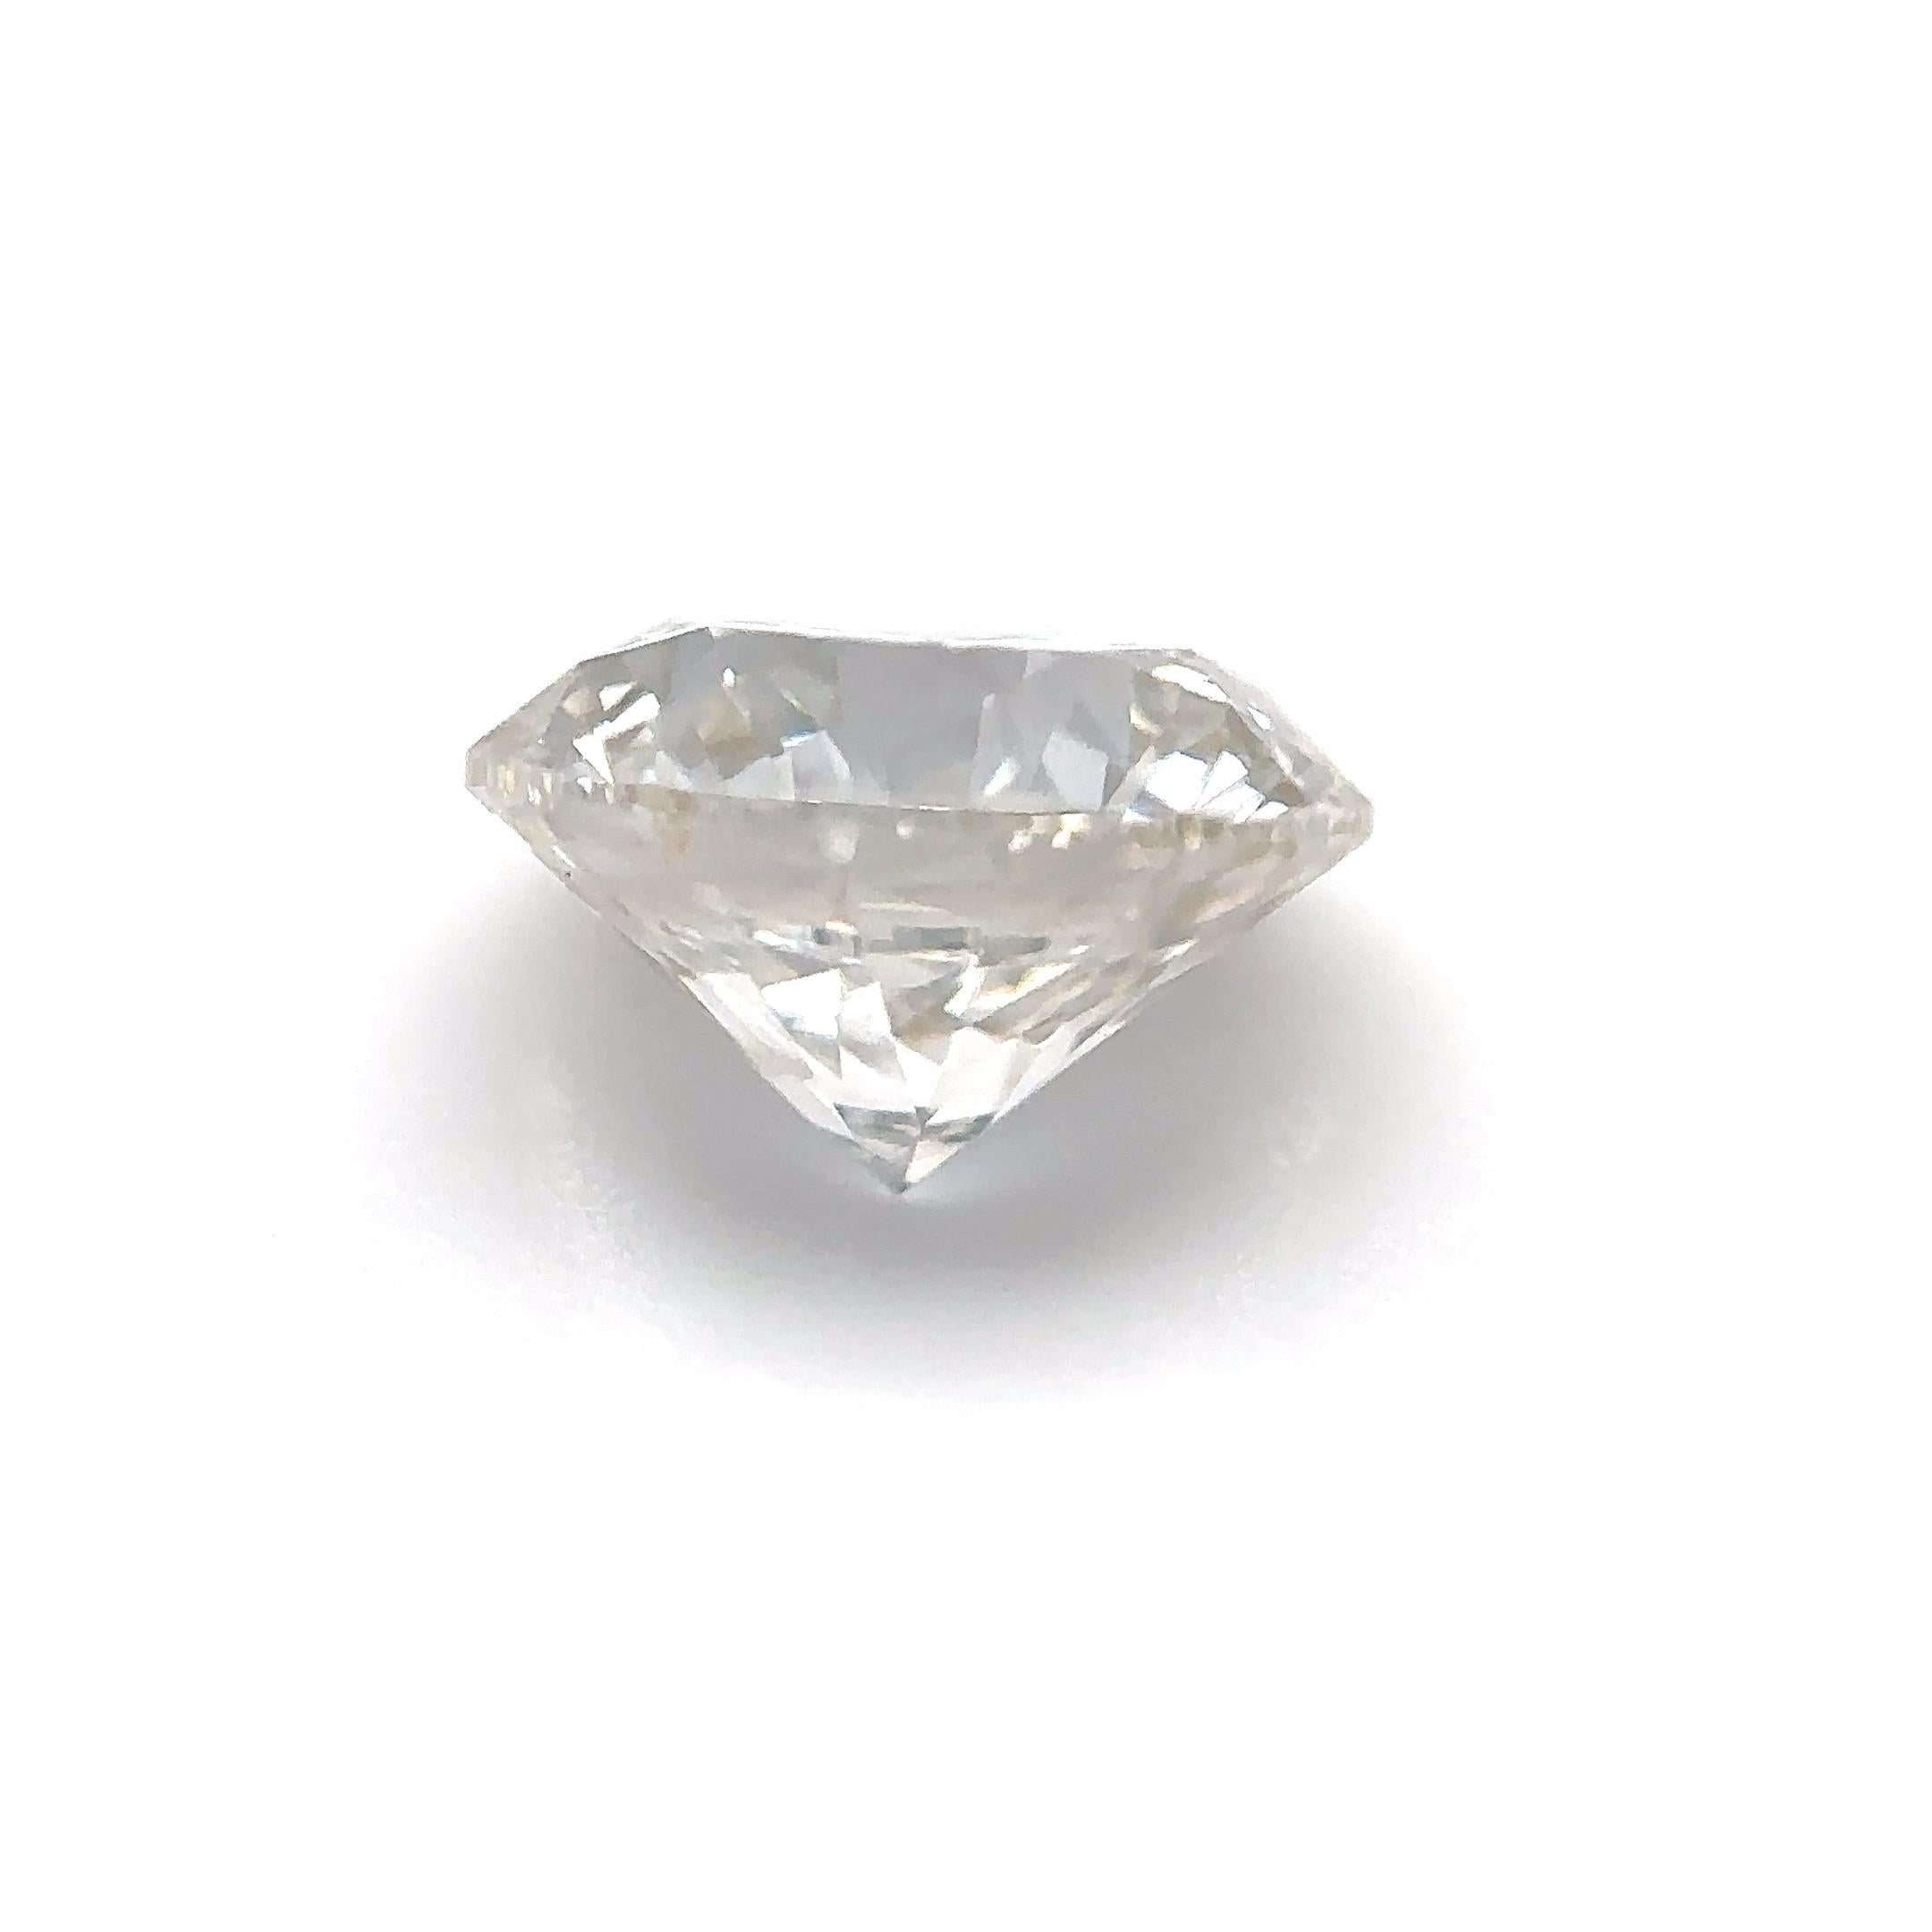 GIA-zertifizierter 1,01-Karat-Rundbrillant-Naturdiamant Lose Stein (Anpassungsoption)

Farbe: J
Klarheit: VS1

Ideal für Verlobungsringe, Eheringe, Diamant-Halsketten und Diamant-Ohrringe. Setzen Sie sich mit uns in Verbindung, um Ihren Schmuck zu